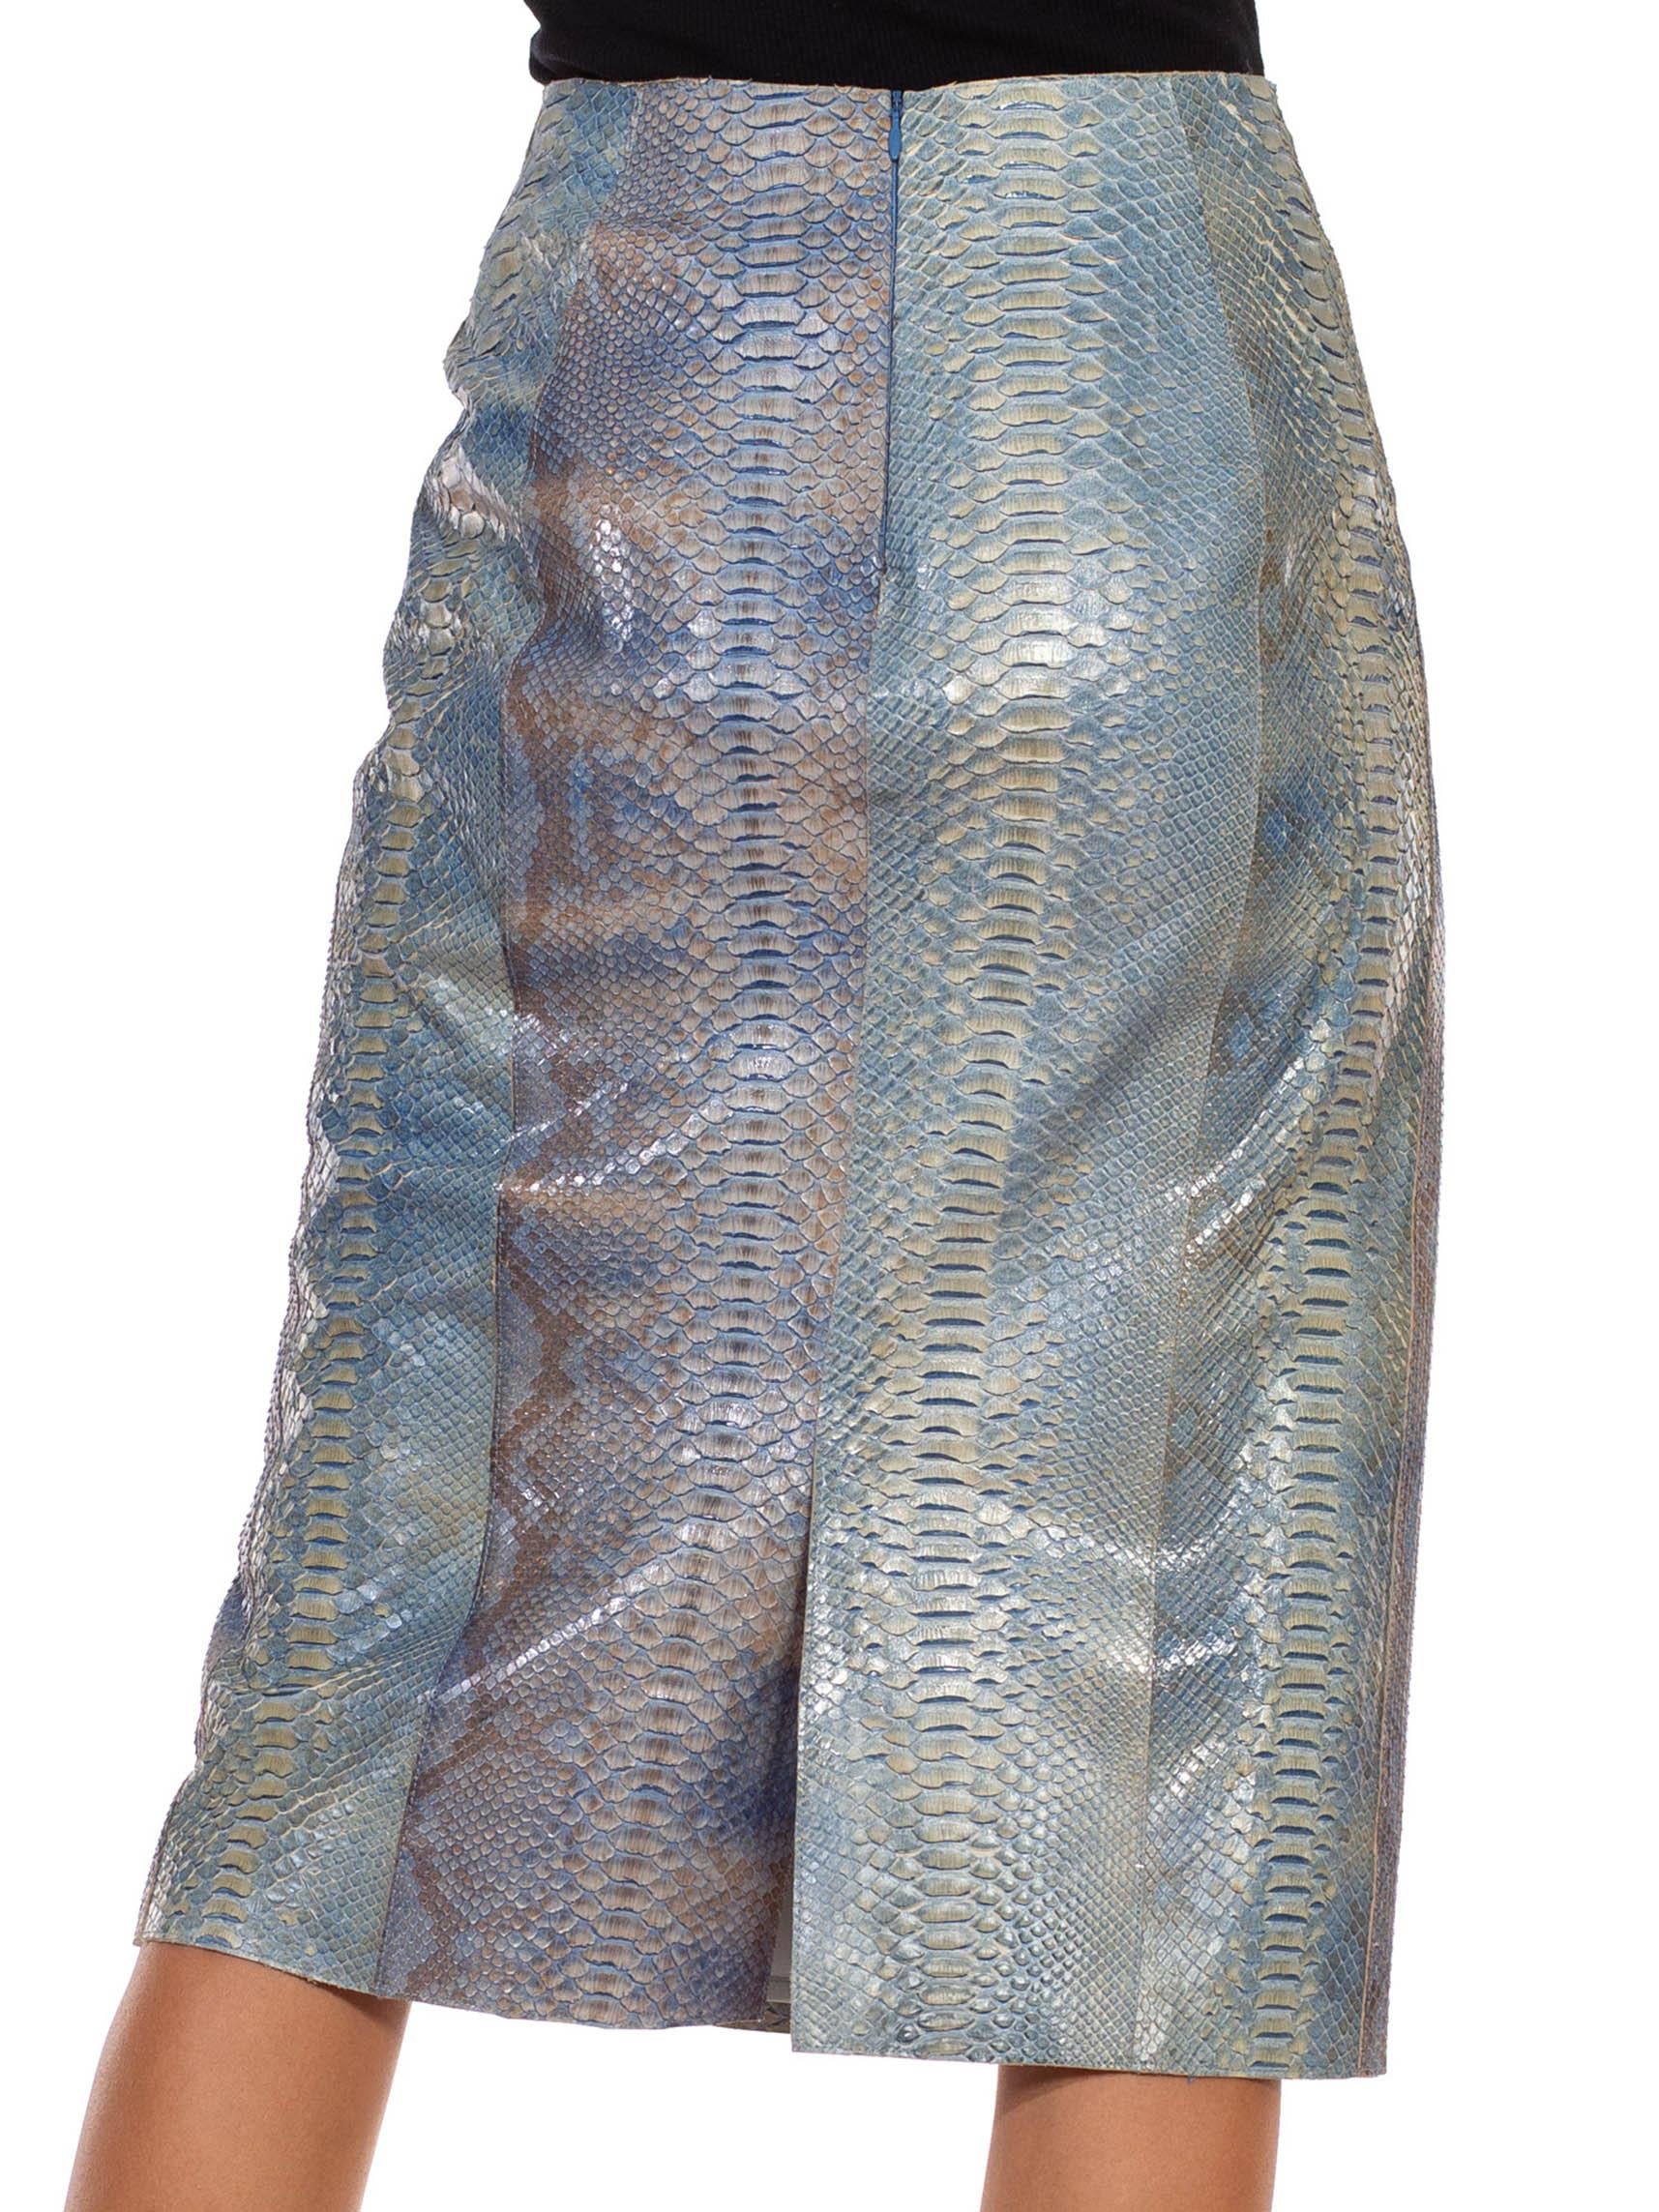 snake print leather skirt